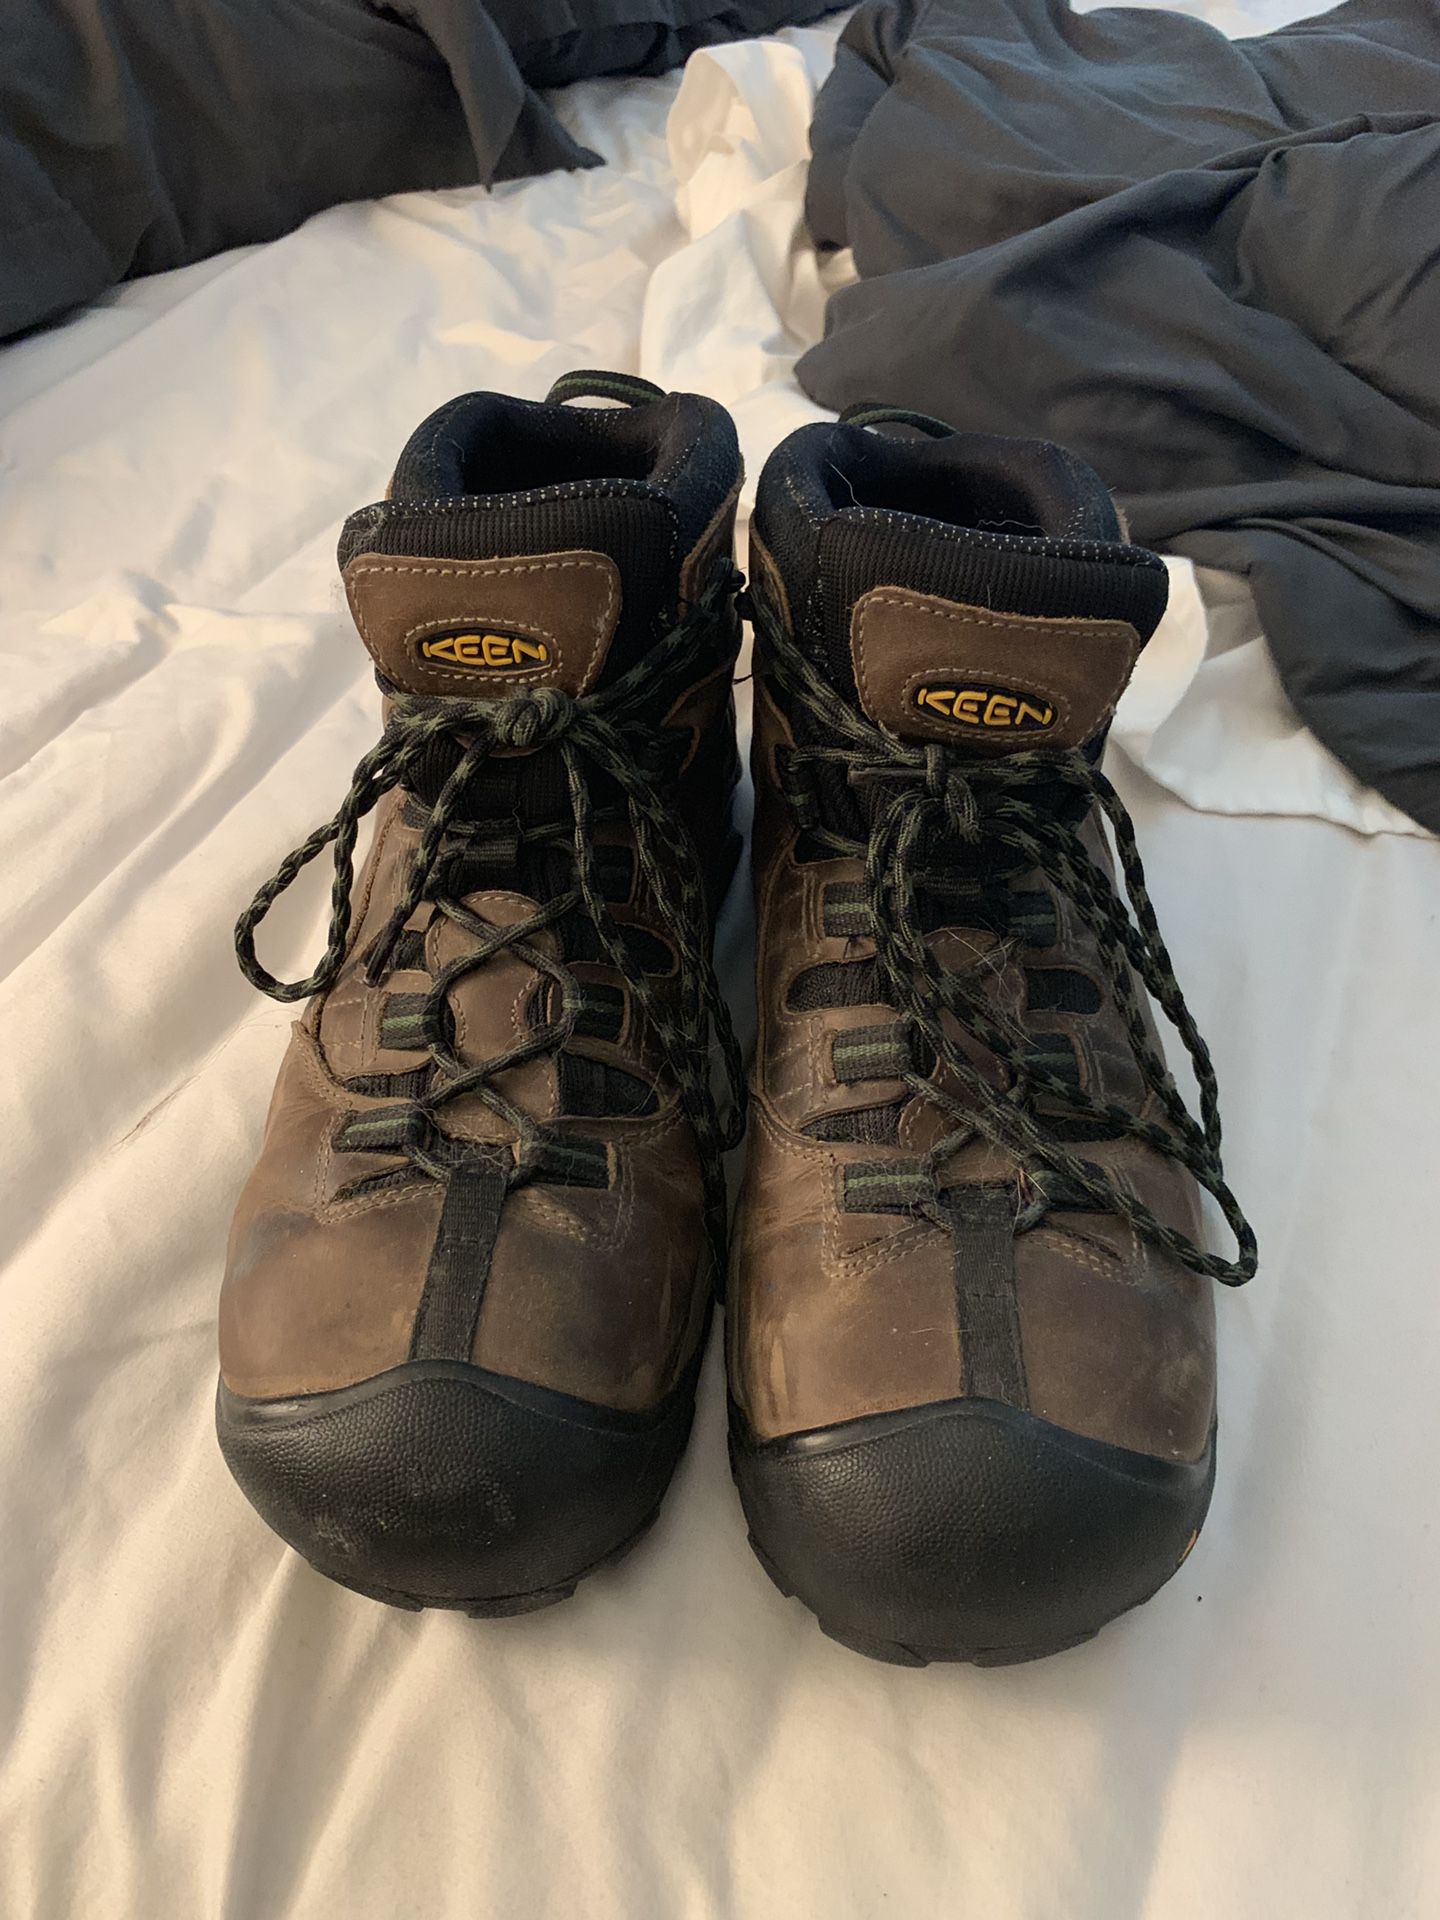 Keen steel toe work boots. Size 11.5